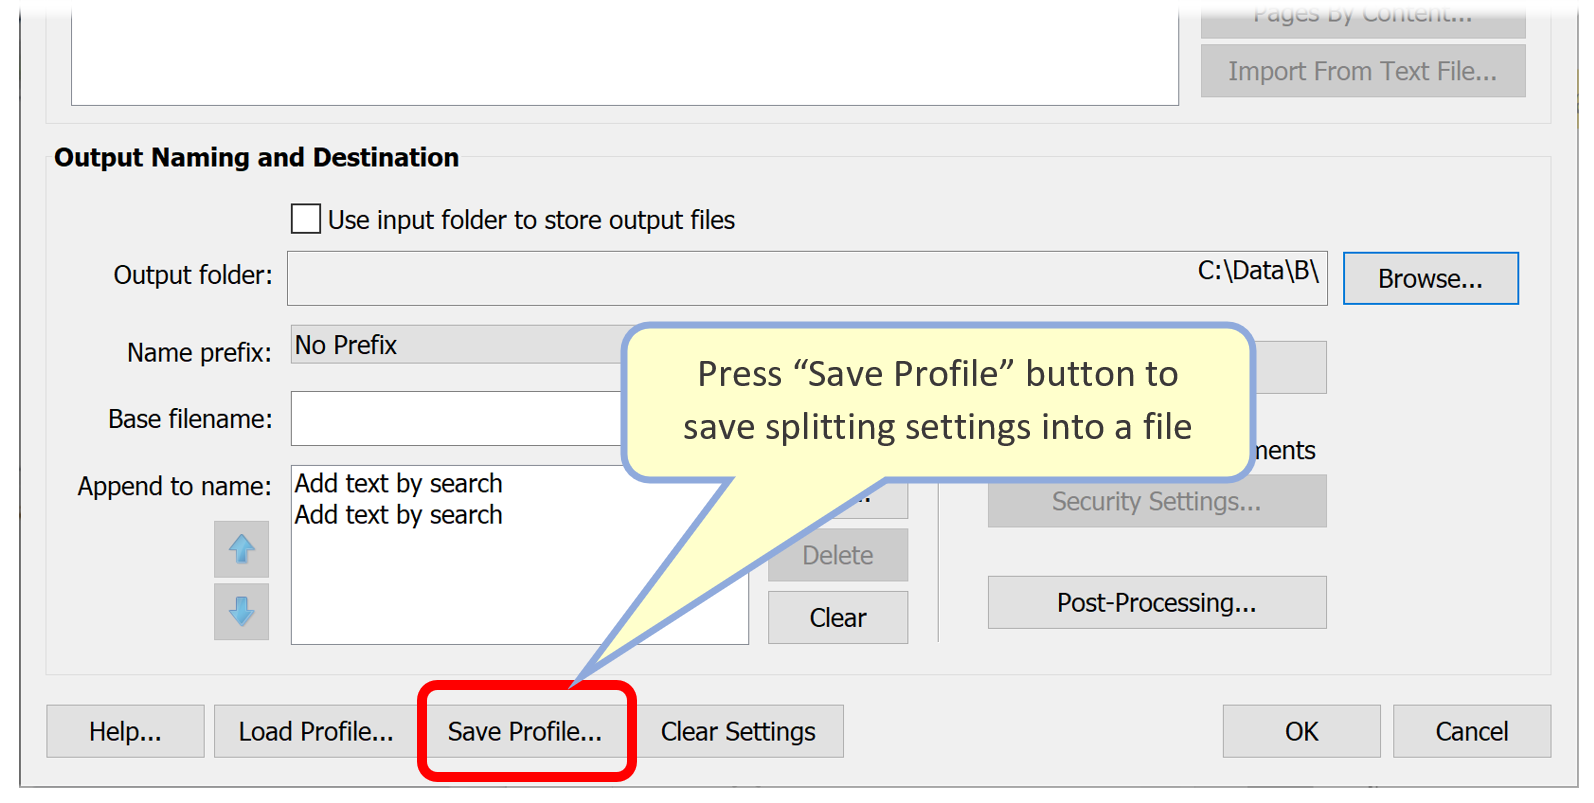 Save settings profile into a file